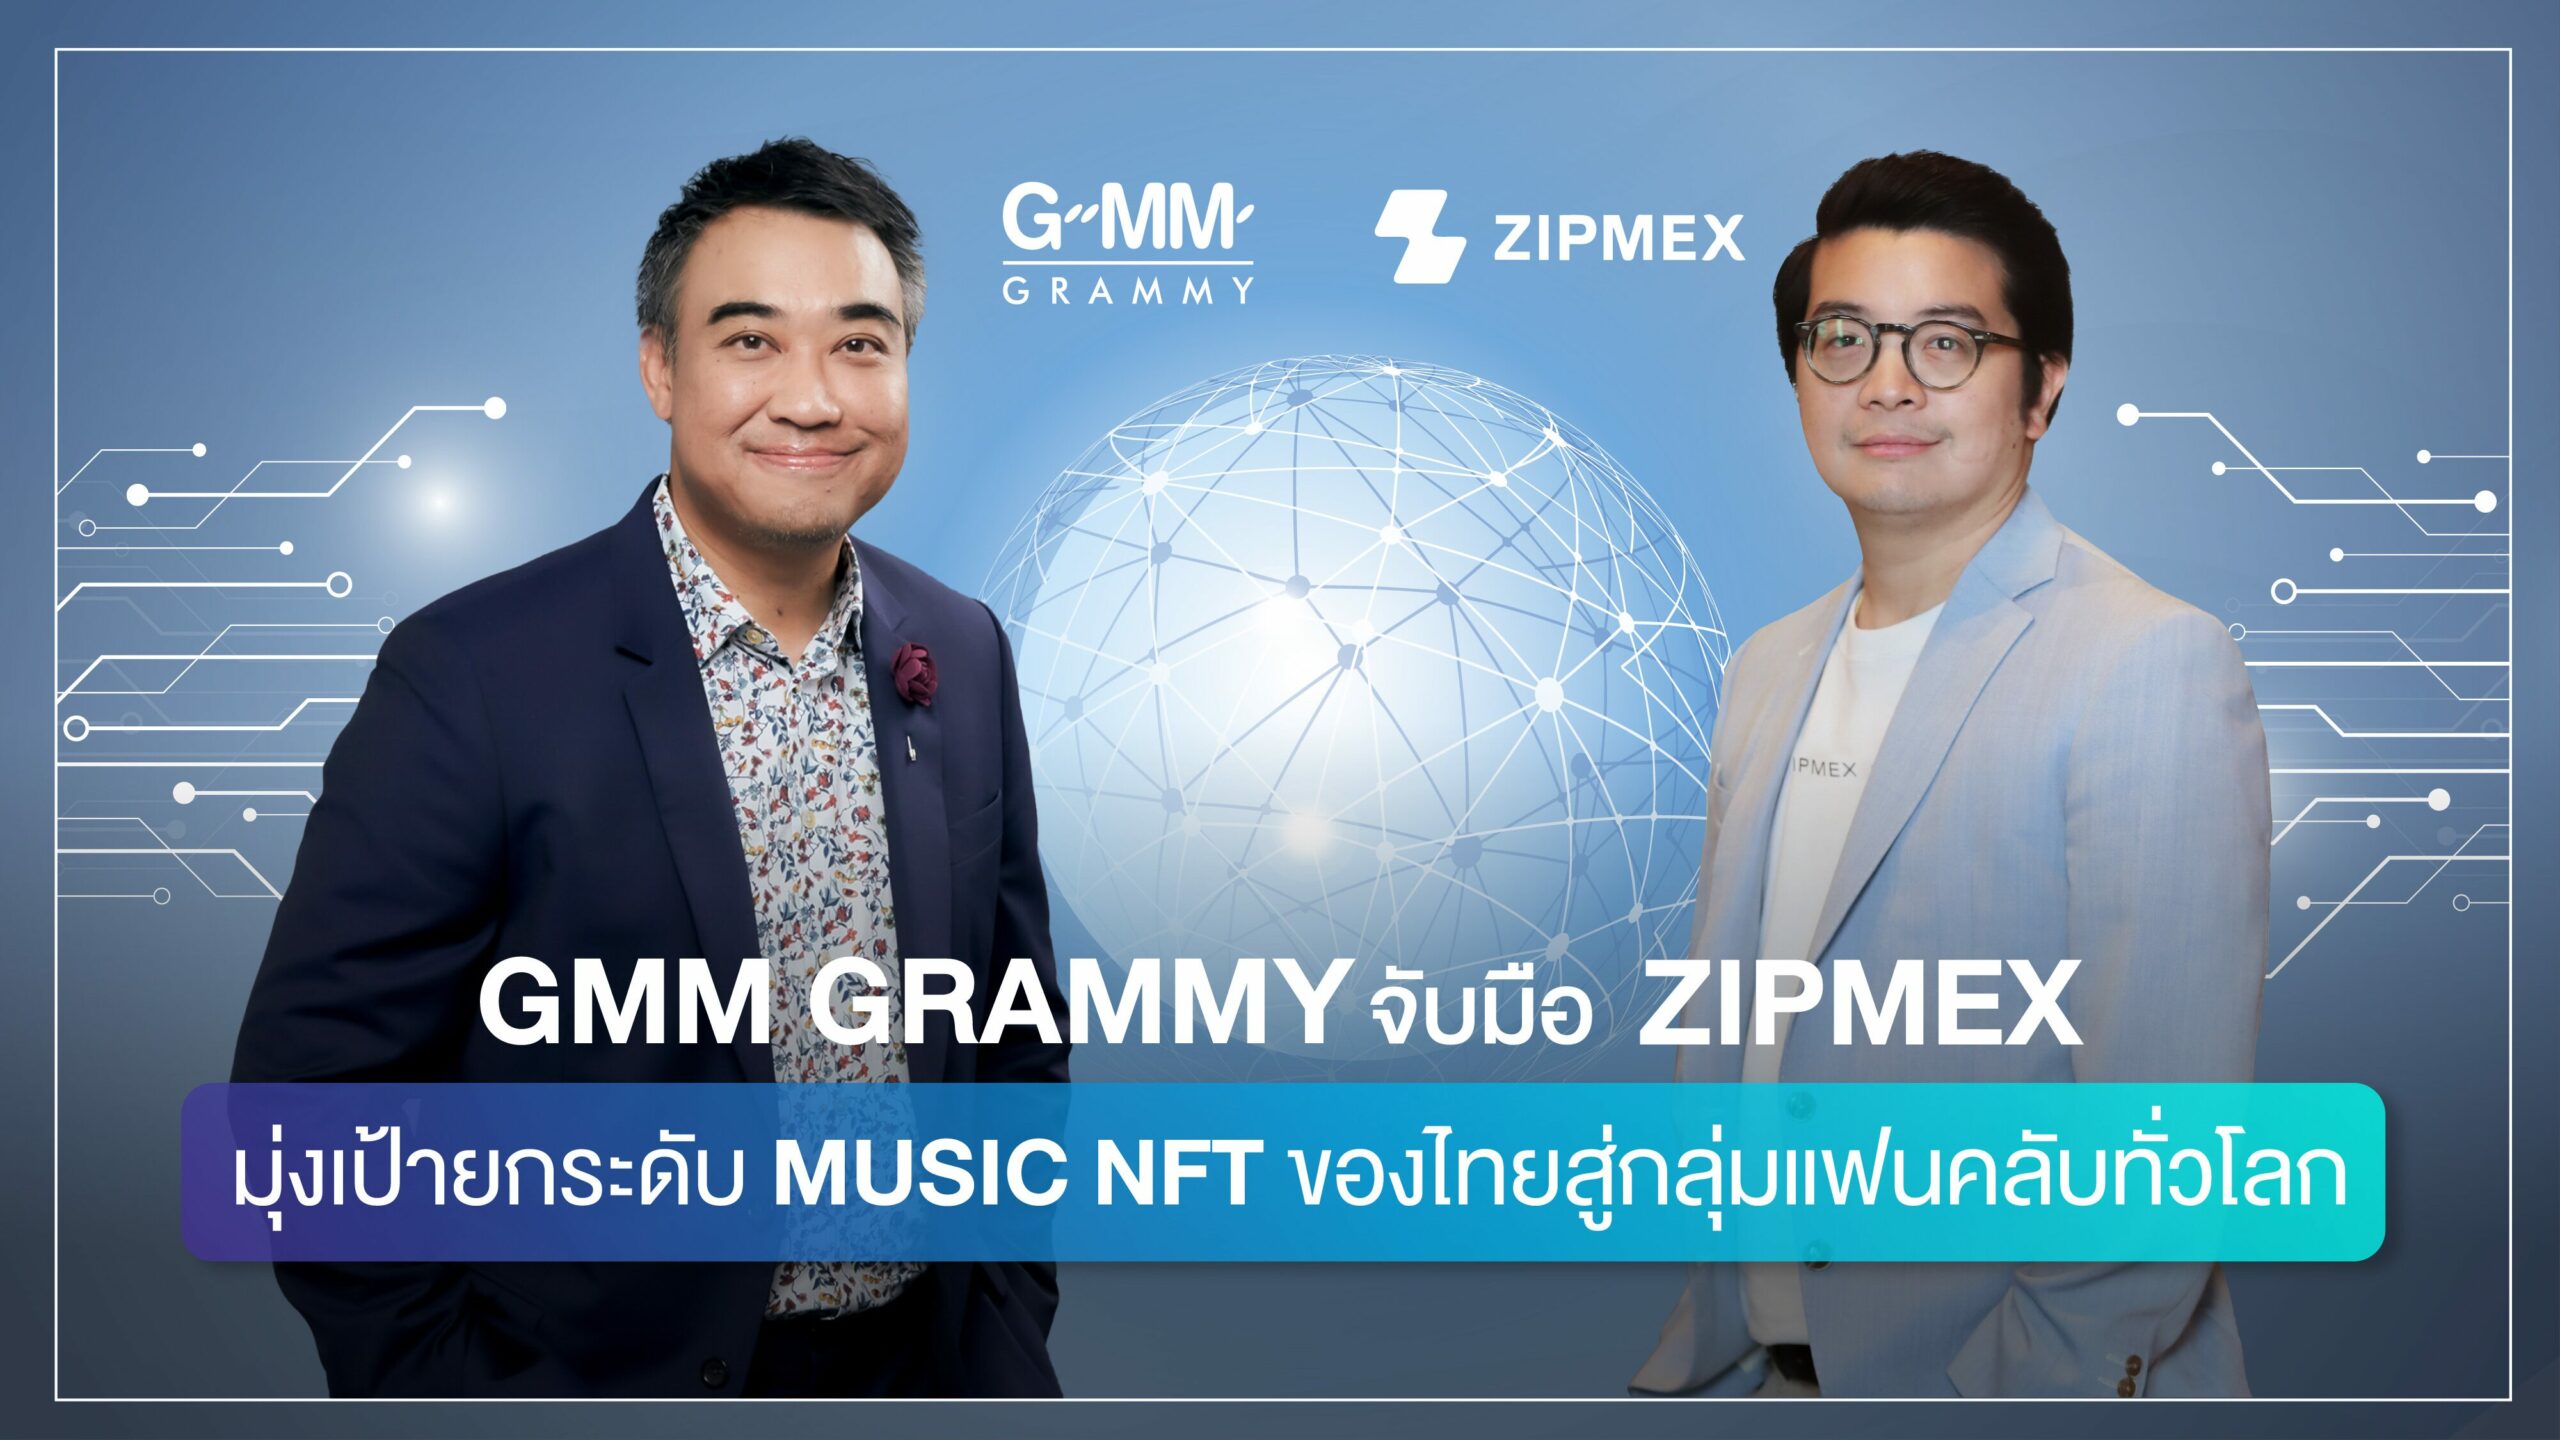 'GMM Grammy' จับมือ 'ZIPMEX' มุ่งเป้ายกระดับ MUSIC NFT ของไทยสู่กลุ่มแฟนคลับทั่วโลก